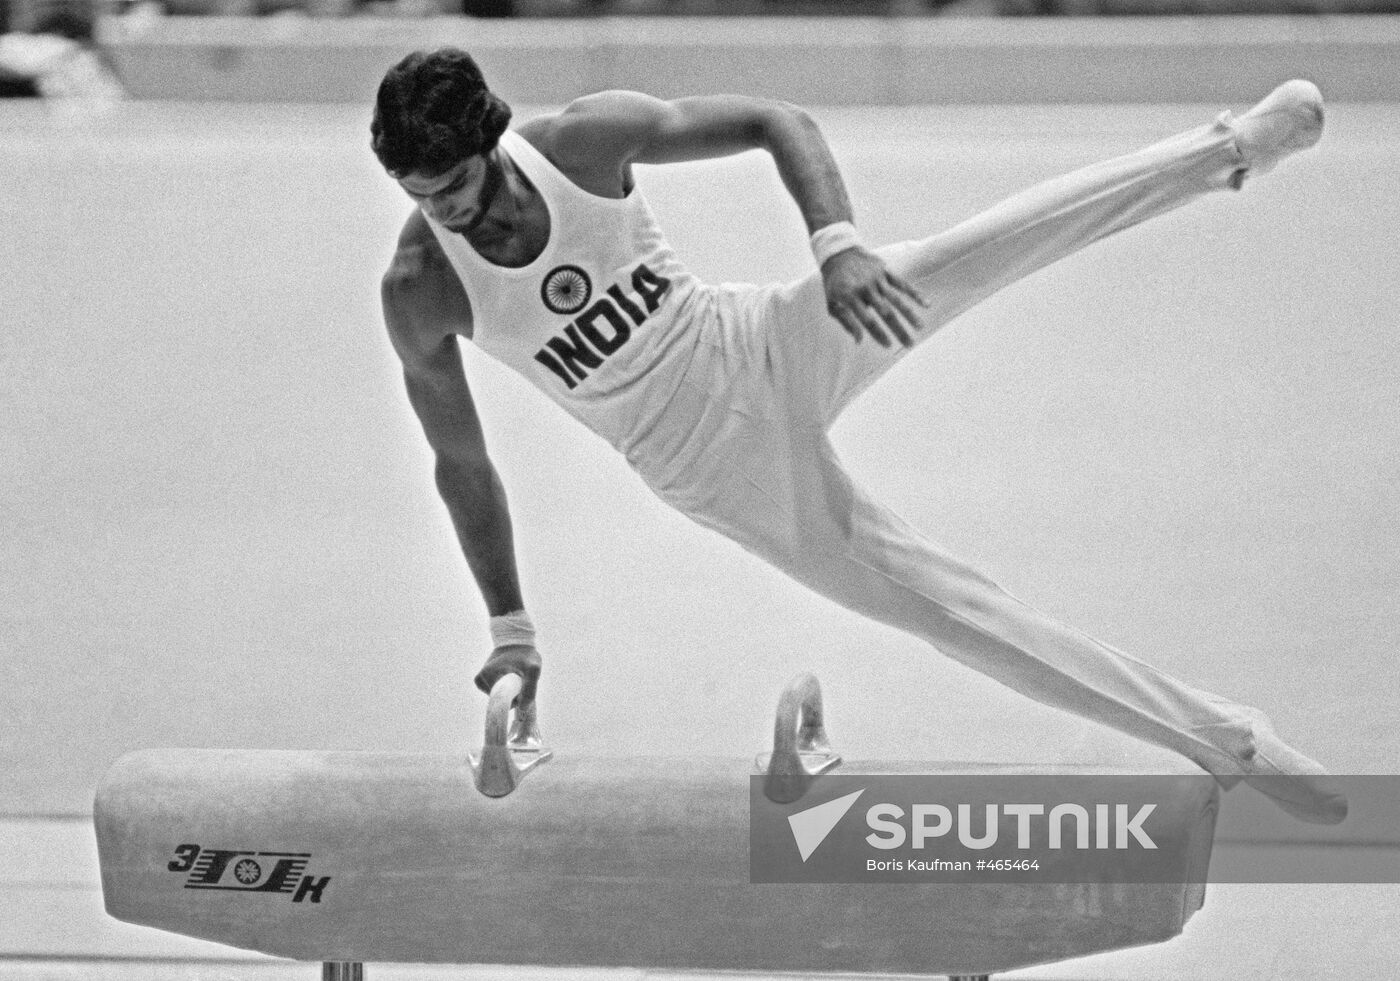 Indian gymnast Singh